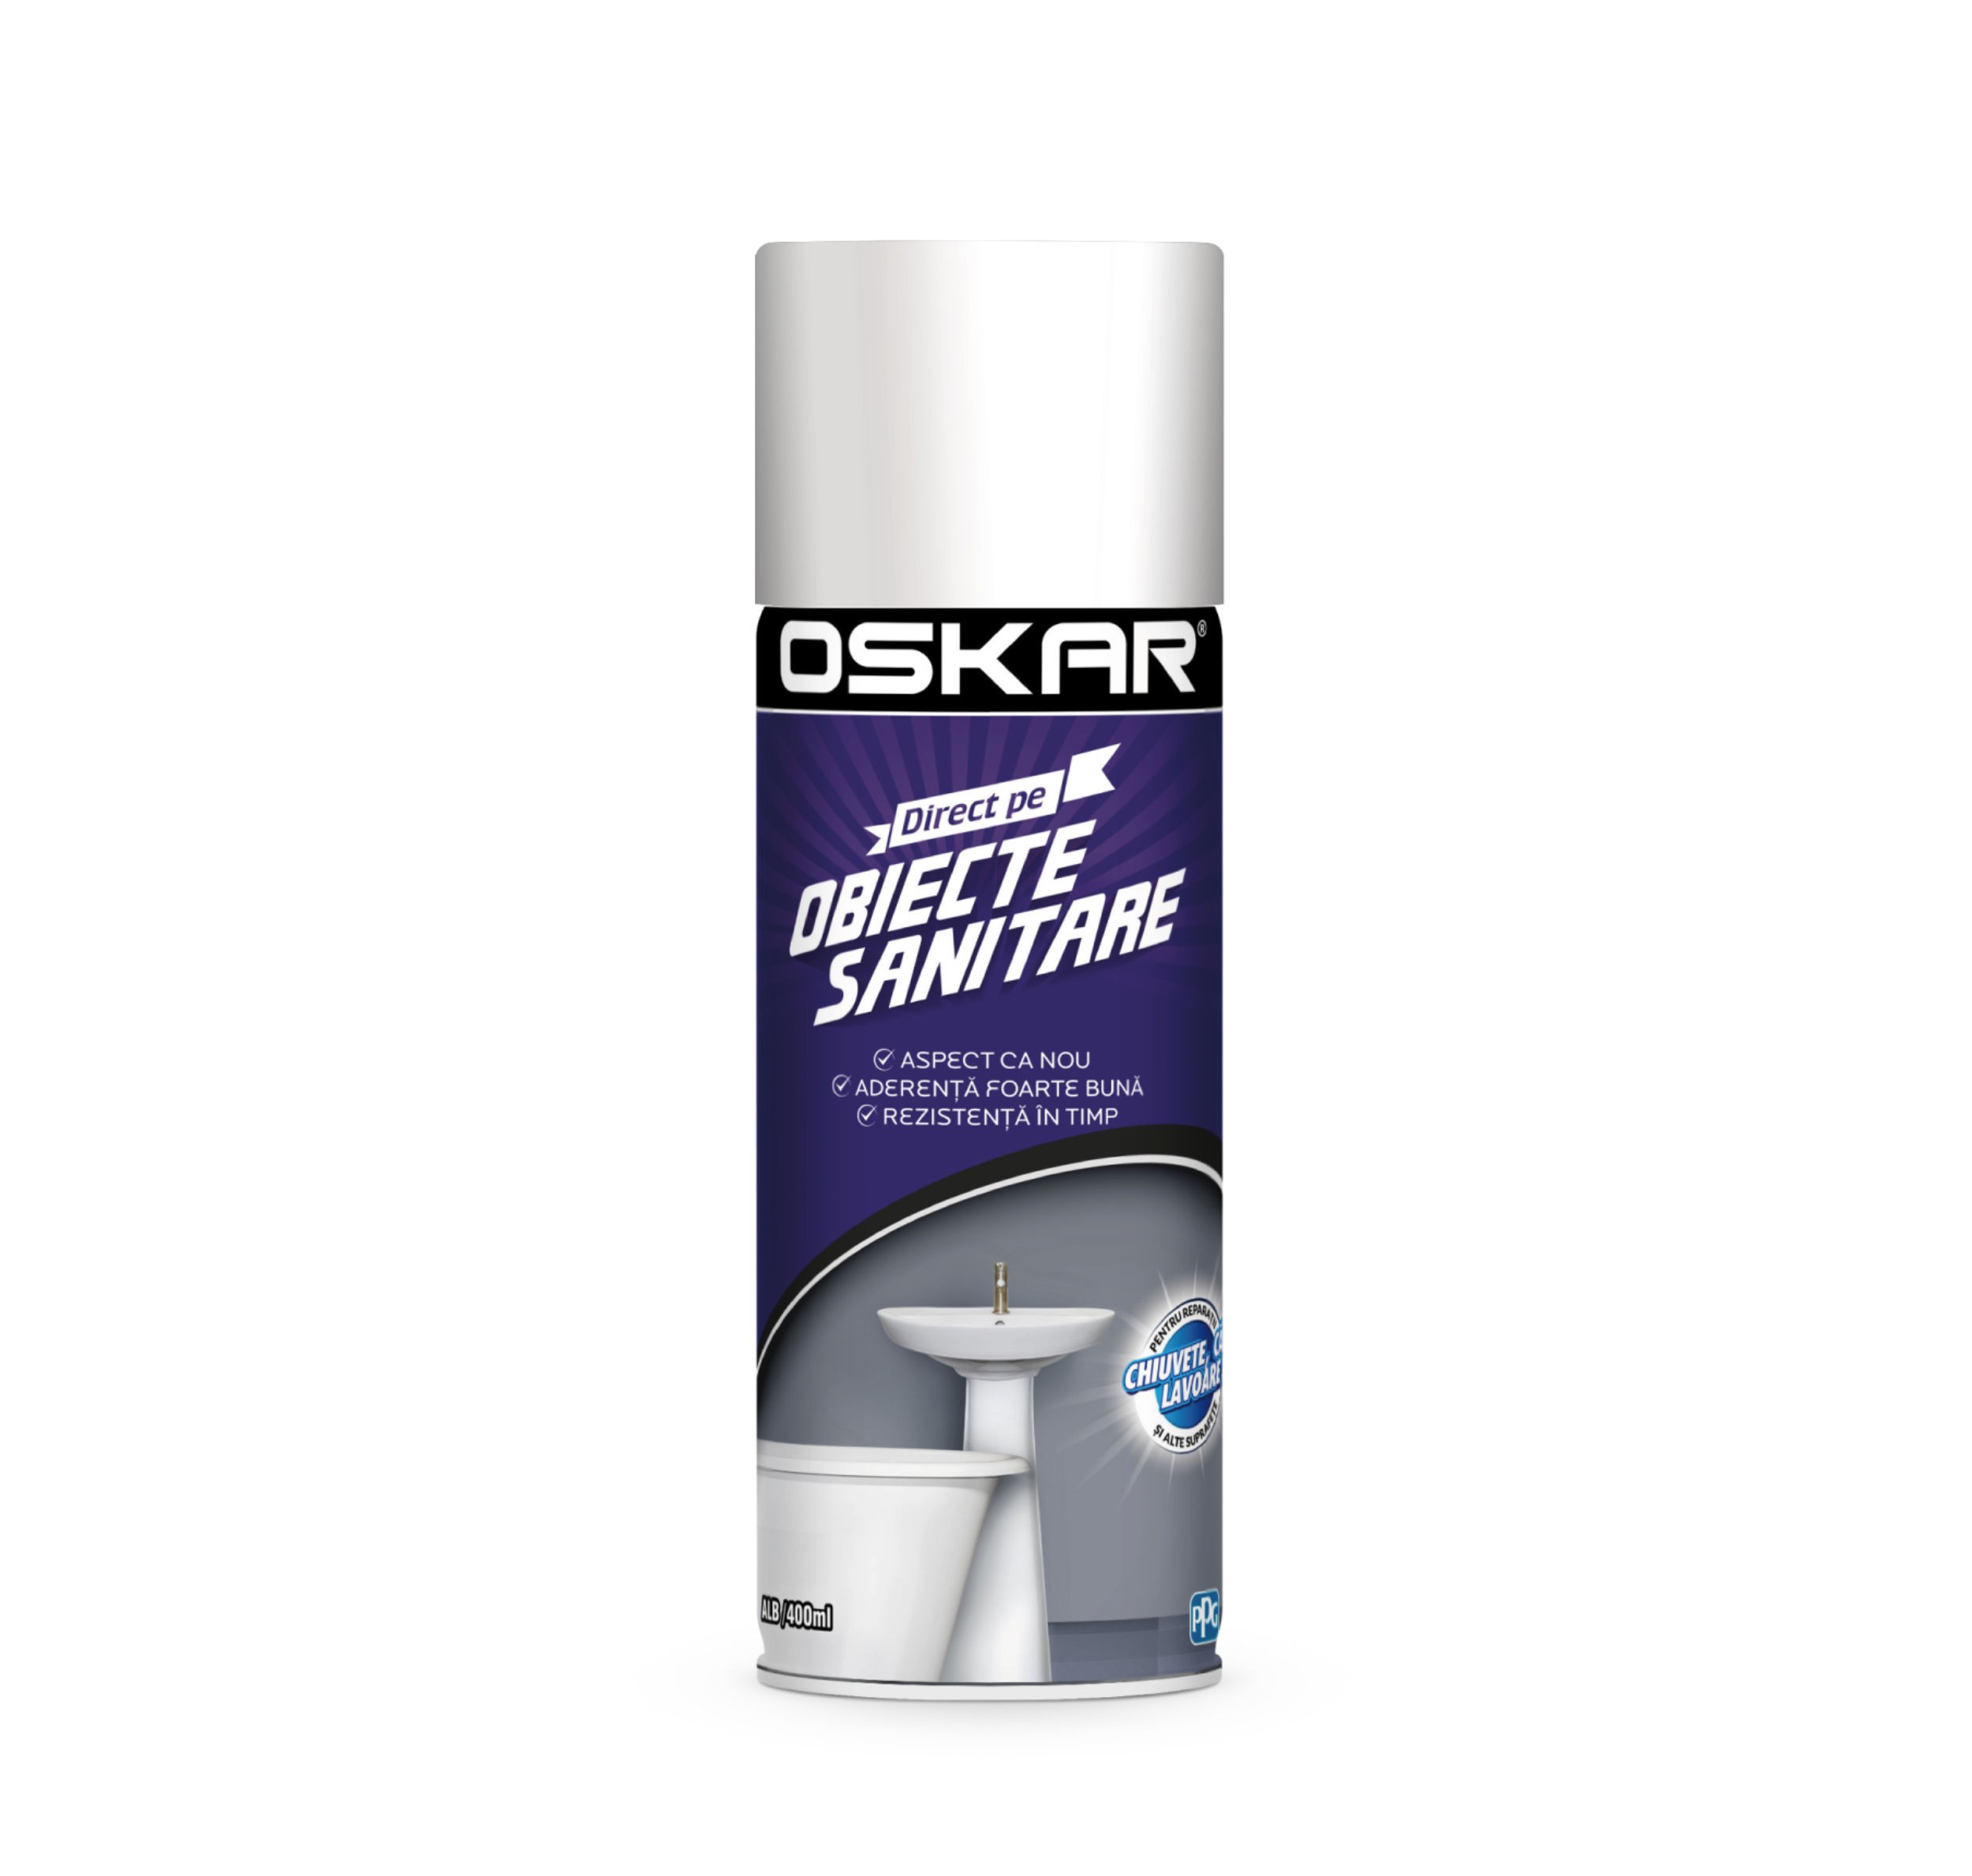 Spray cu vopsea, Oskar Direct pe obiecte sanitare, culoare alba, 400 ml